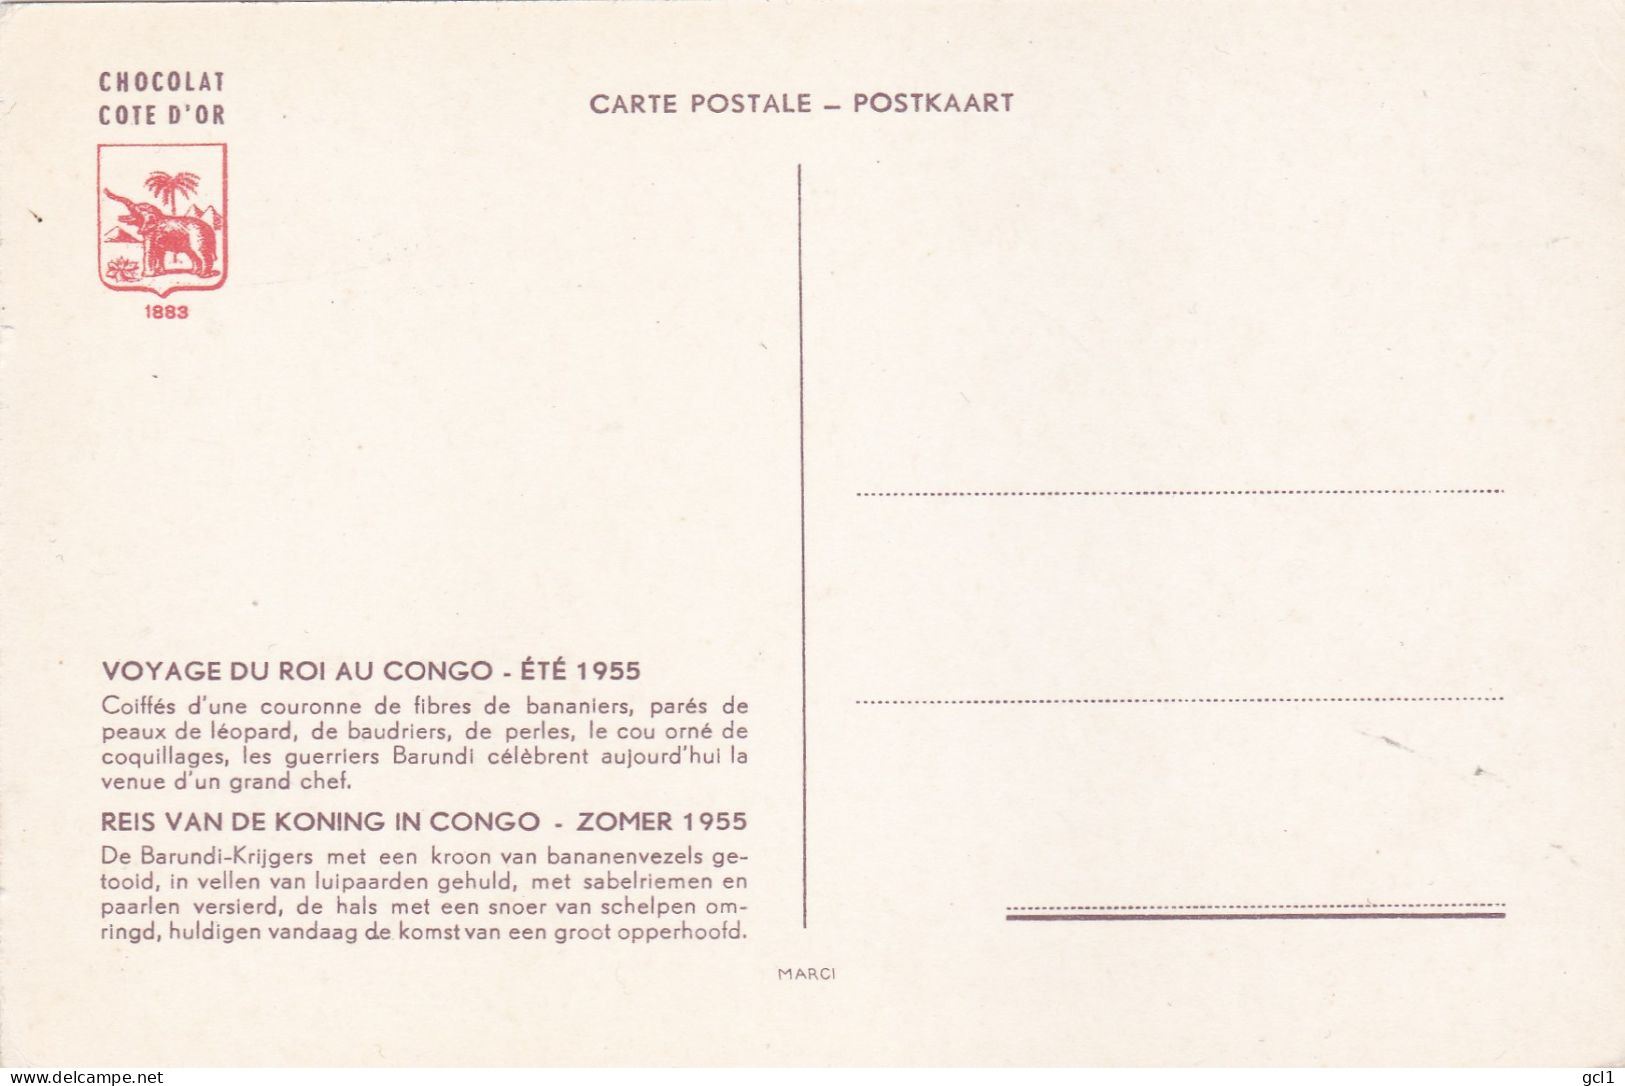 Reis Van De Koning In Congo -Zomer 1955 - 15 Stuks Van Cote D' Or Chocolade - Collections & Lots